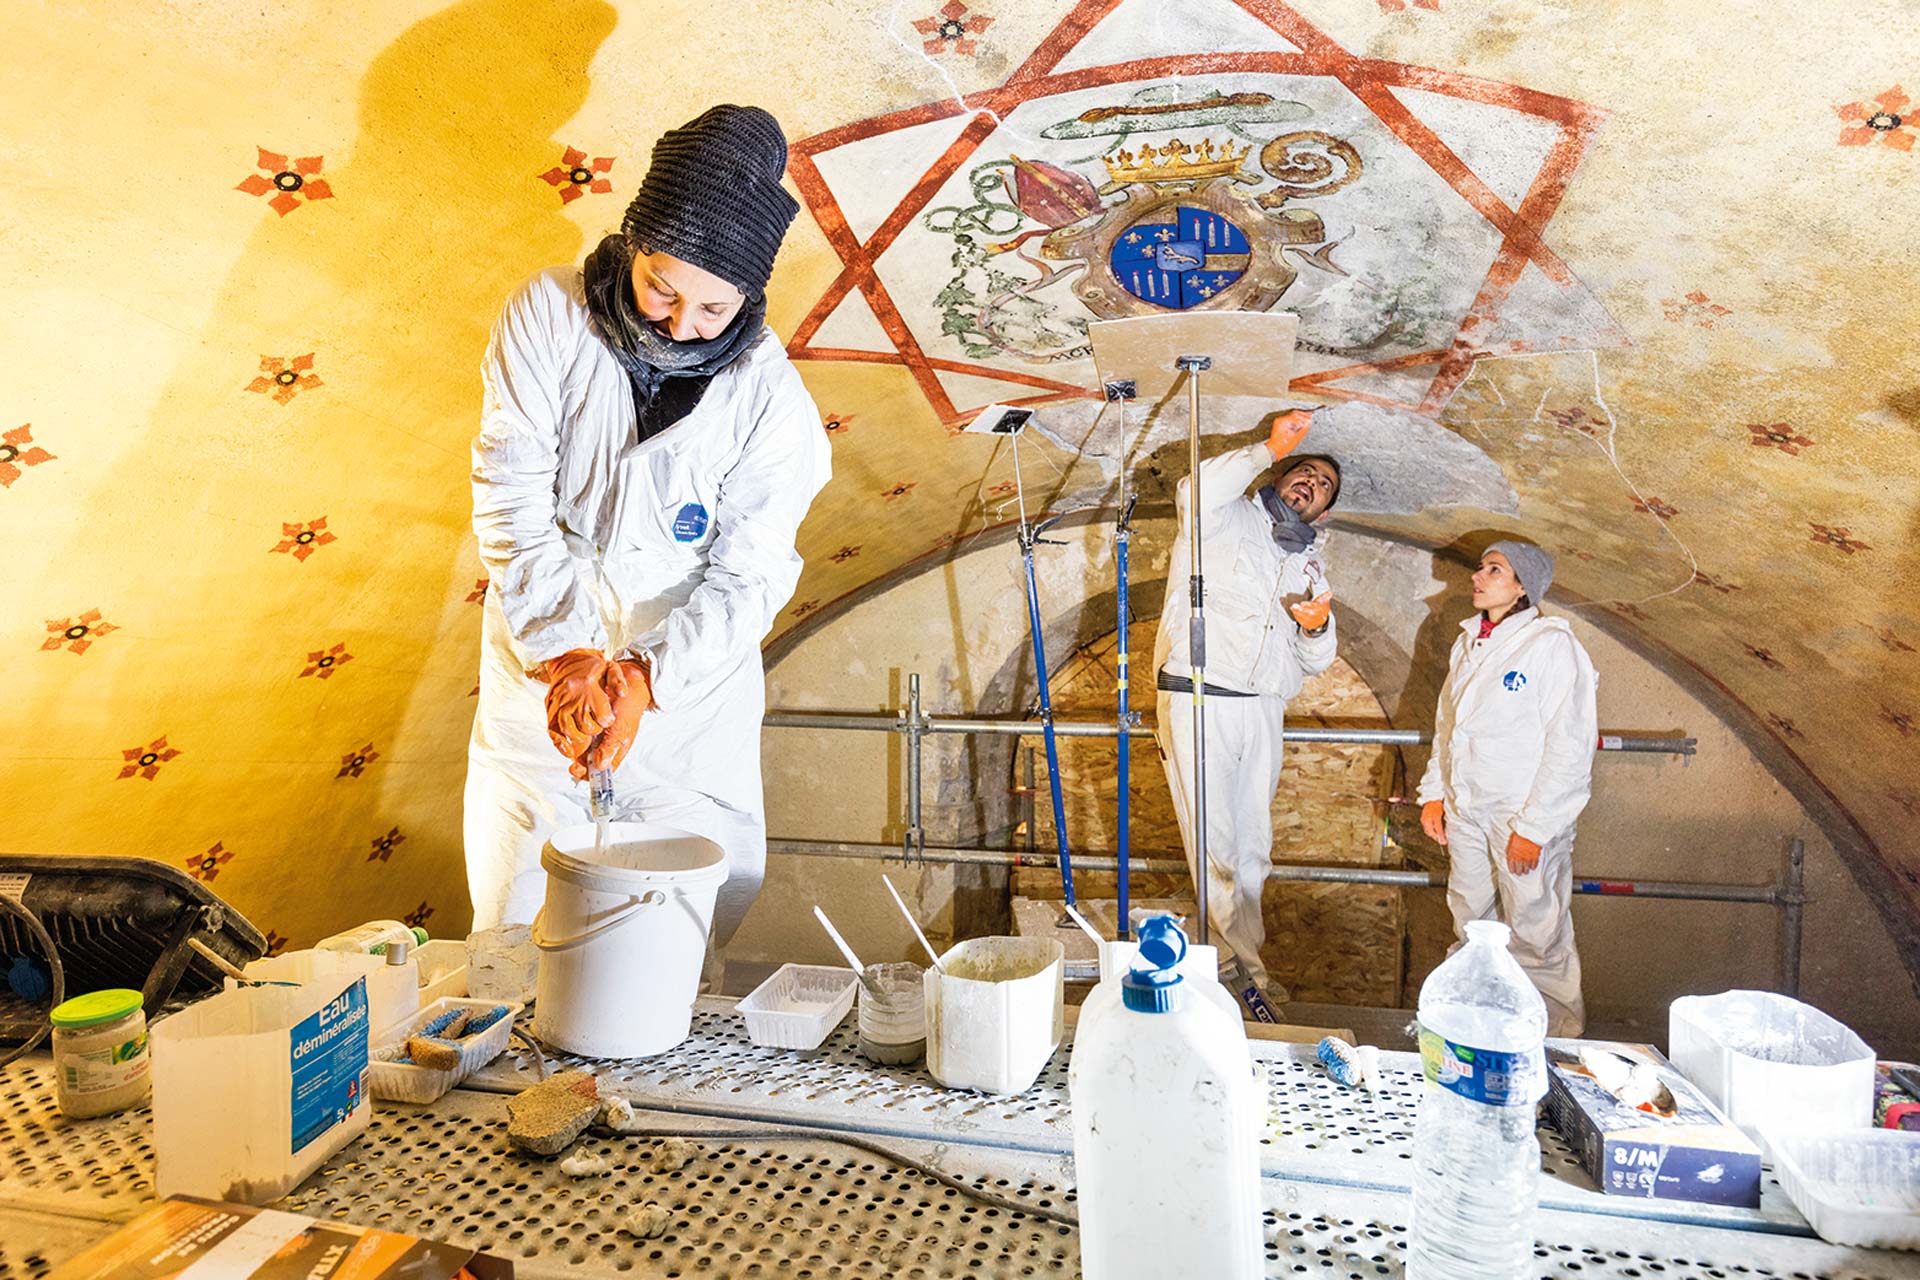 170 ans de poussière recouvrent les décors peints de la cathédrale d’Alès. Quinze spécialistes les nettoient et les restaurent sur 7000 m². © studio Guichard